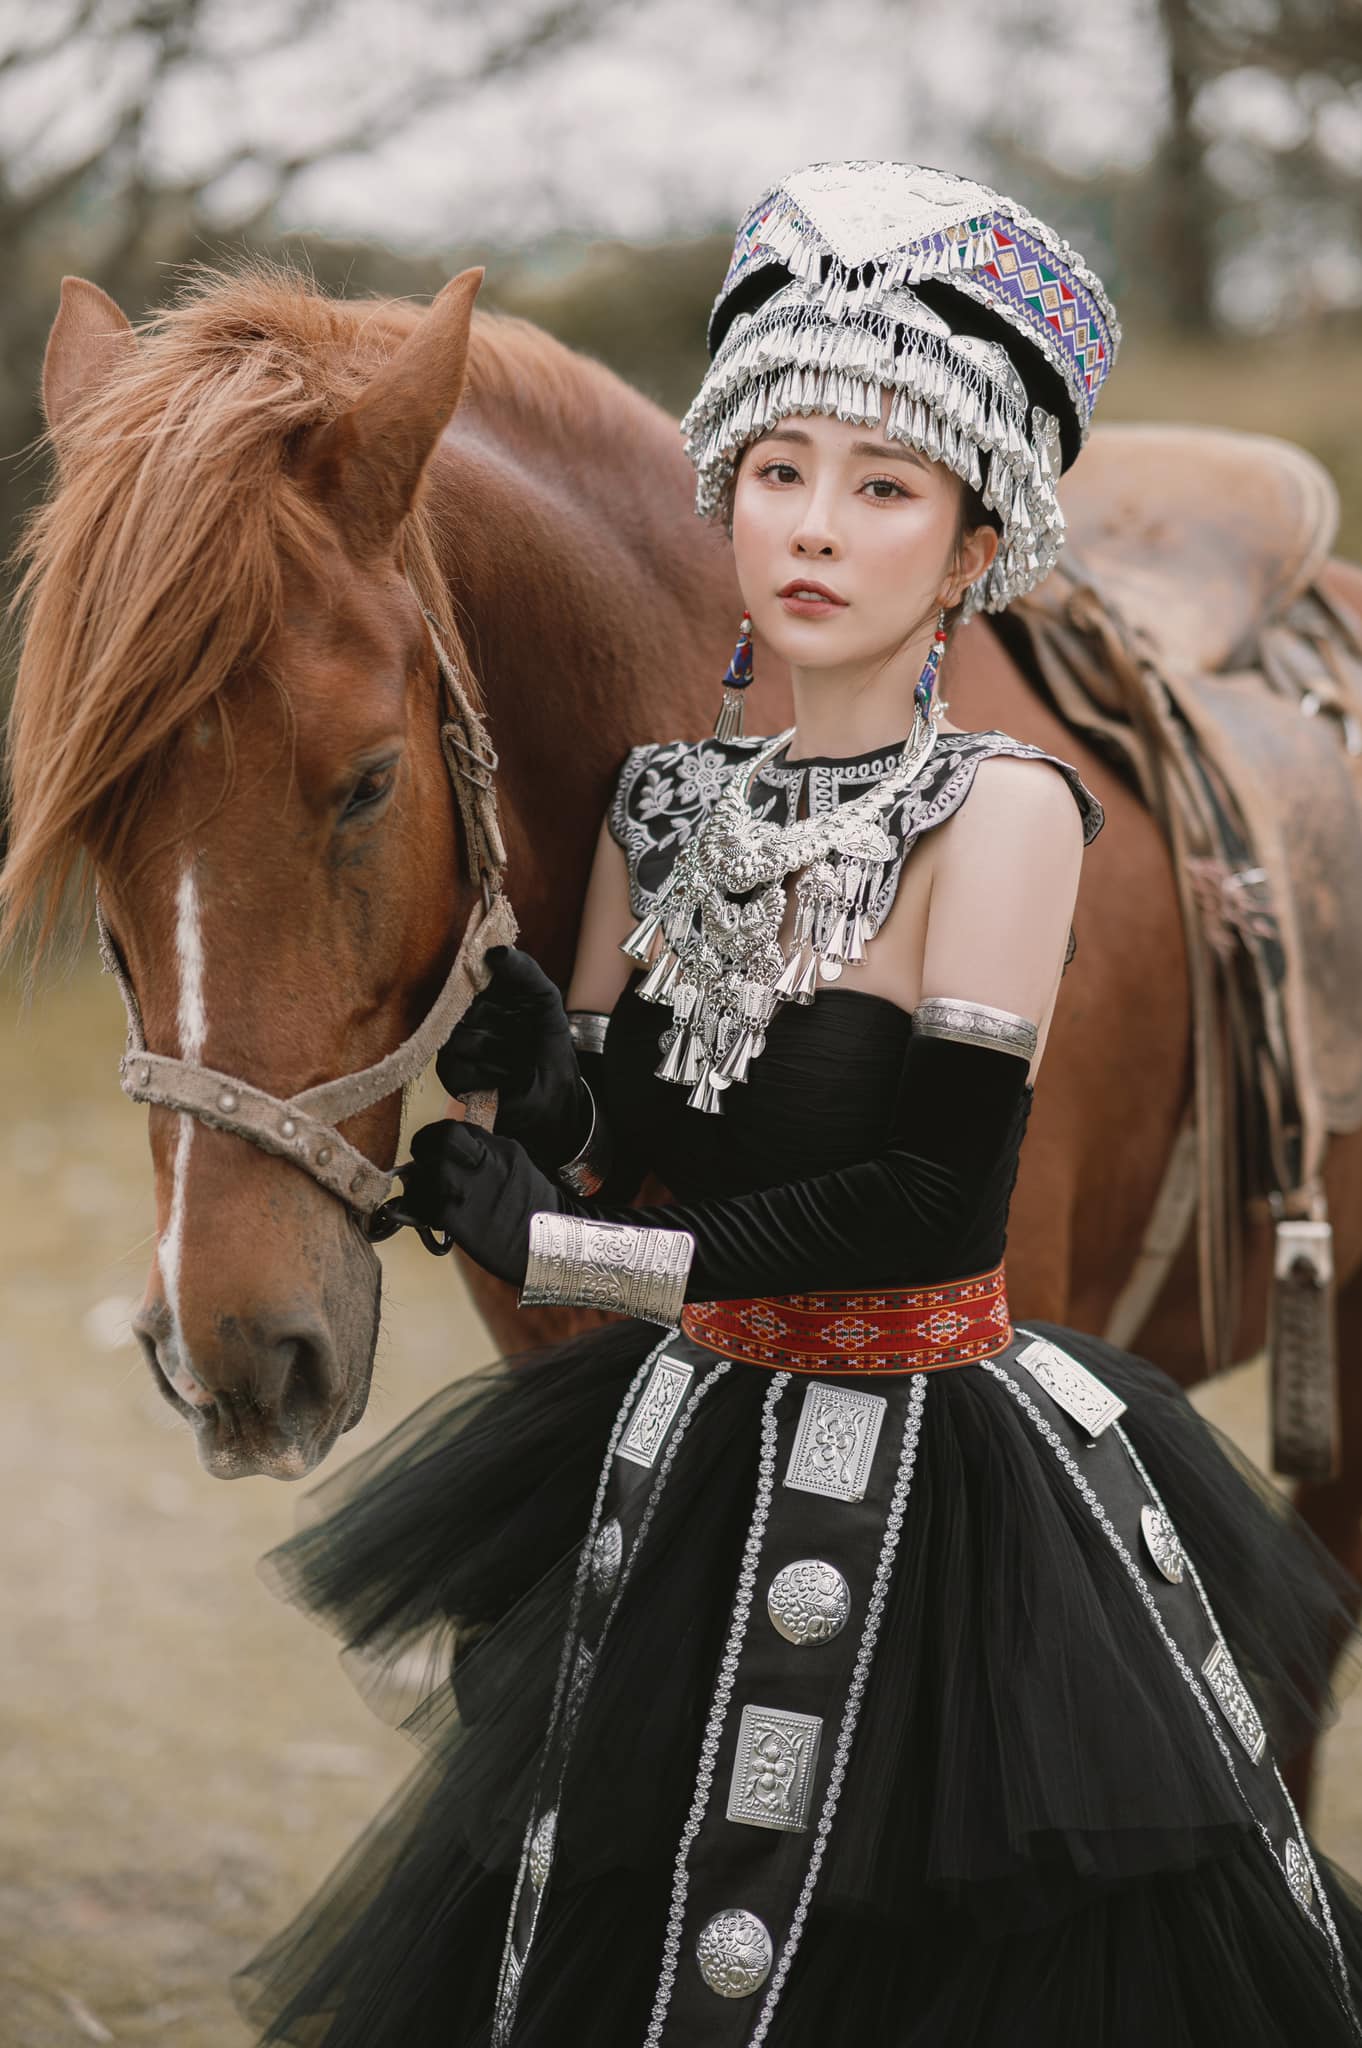 'Cá sấu chúa' Quỳnh Nga hóa công chúa Mông Cổ, cưỡi ngựa bắn cung đẹp như phim cổ trang Hoa ngữ - Ảnh 5